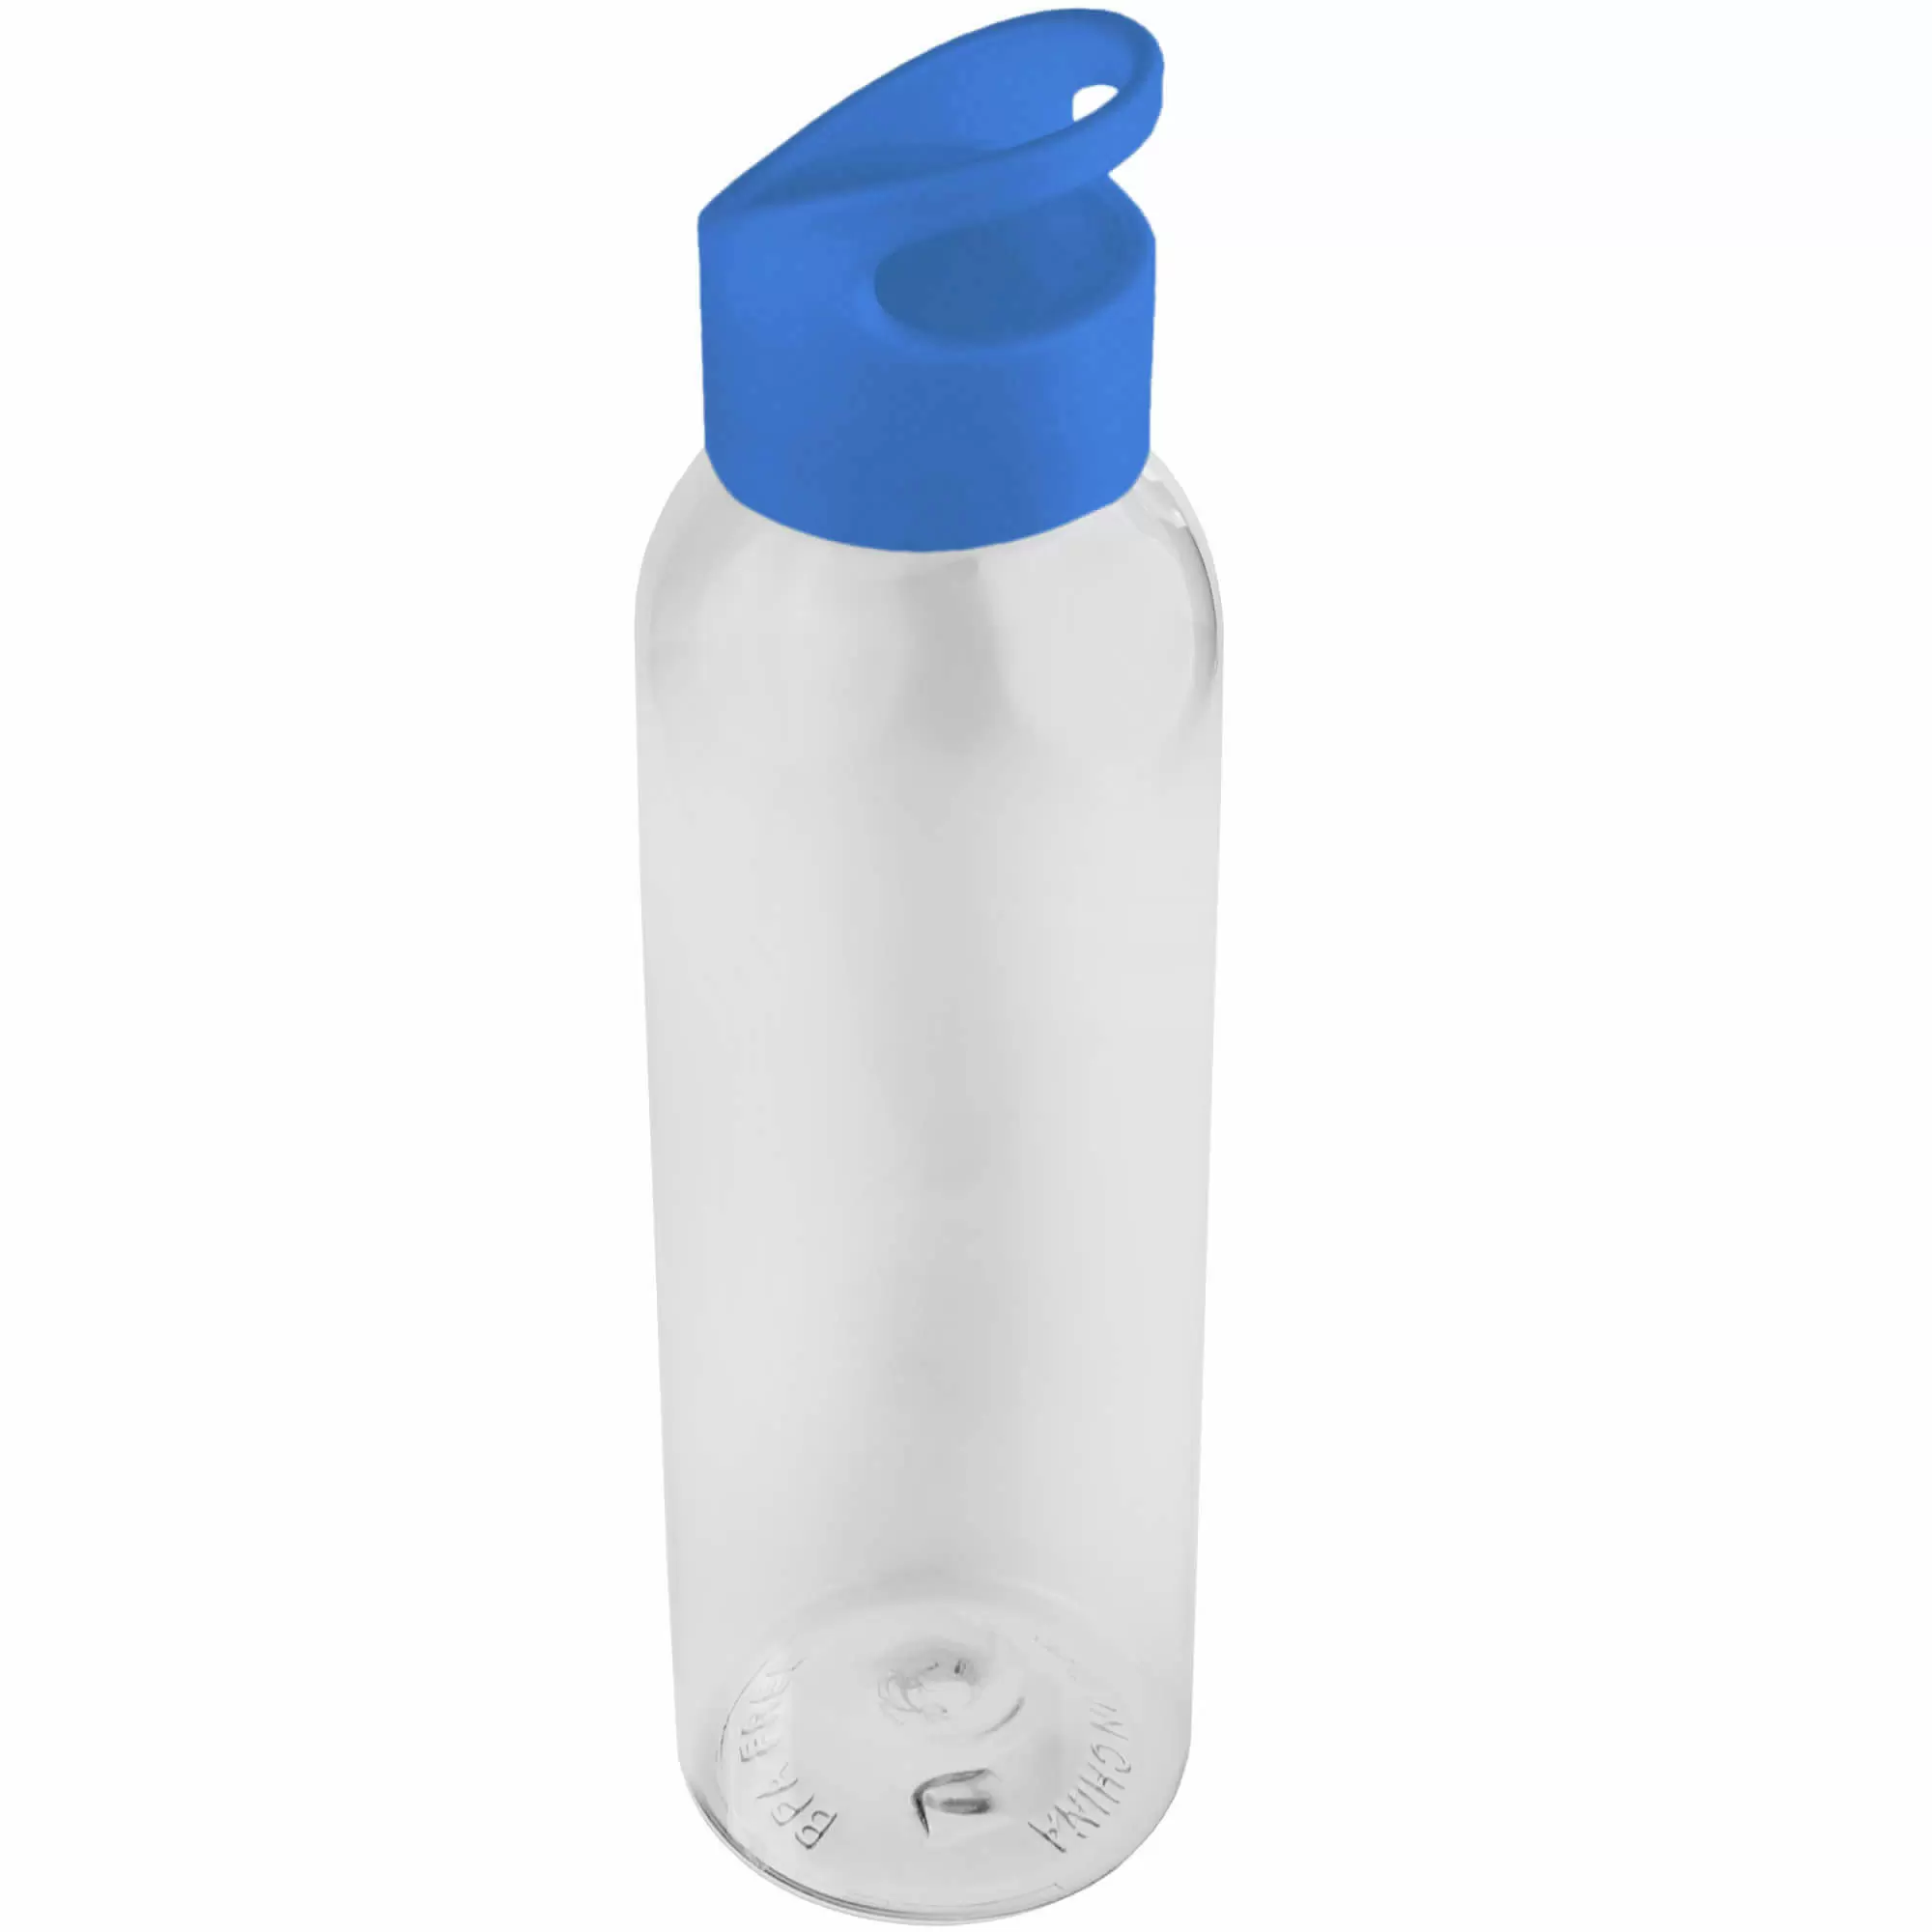 Термокружка Бутылка для воды BINGO 630мл. Прозрачная с голубым 6071-20-12